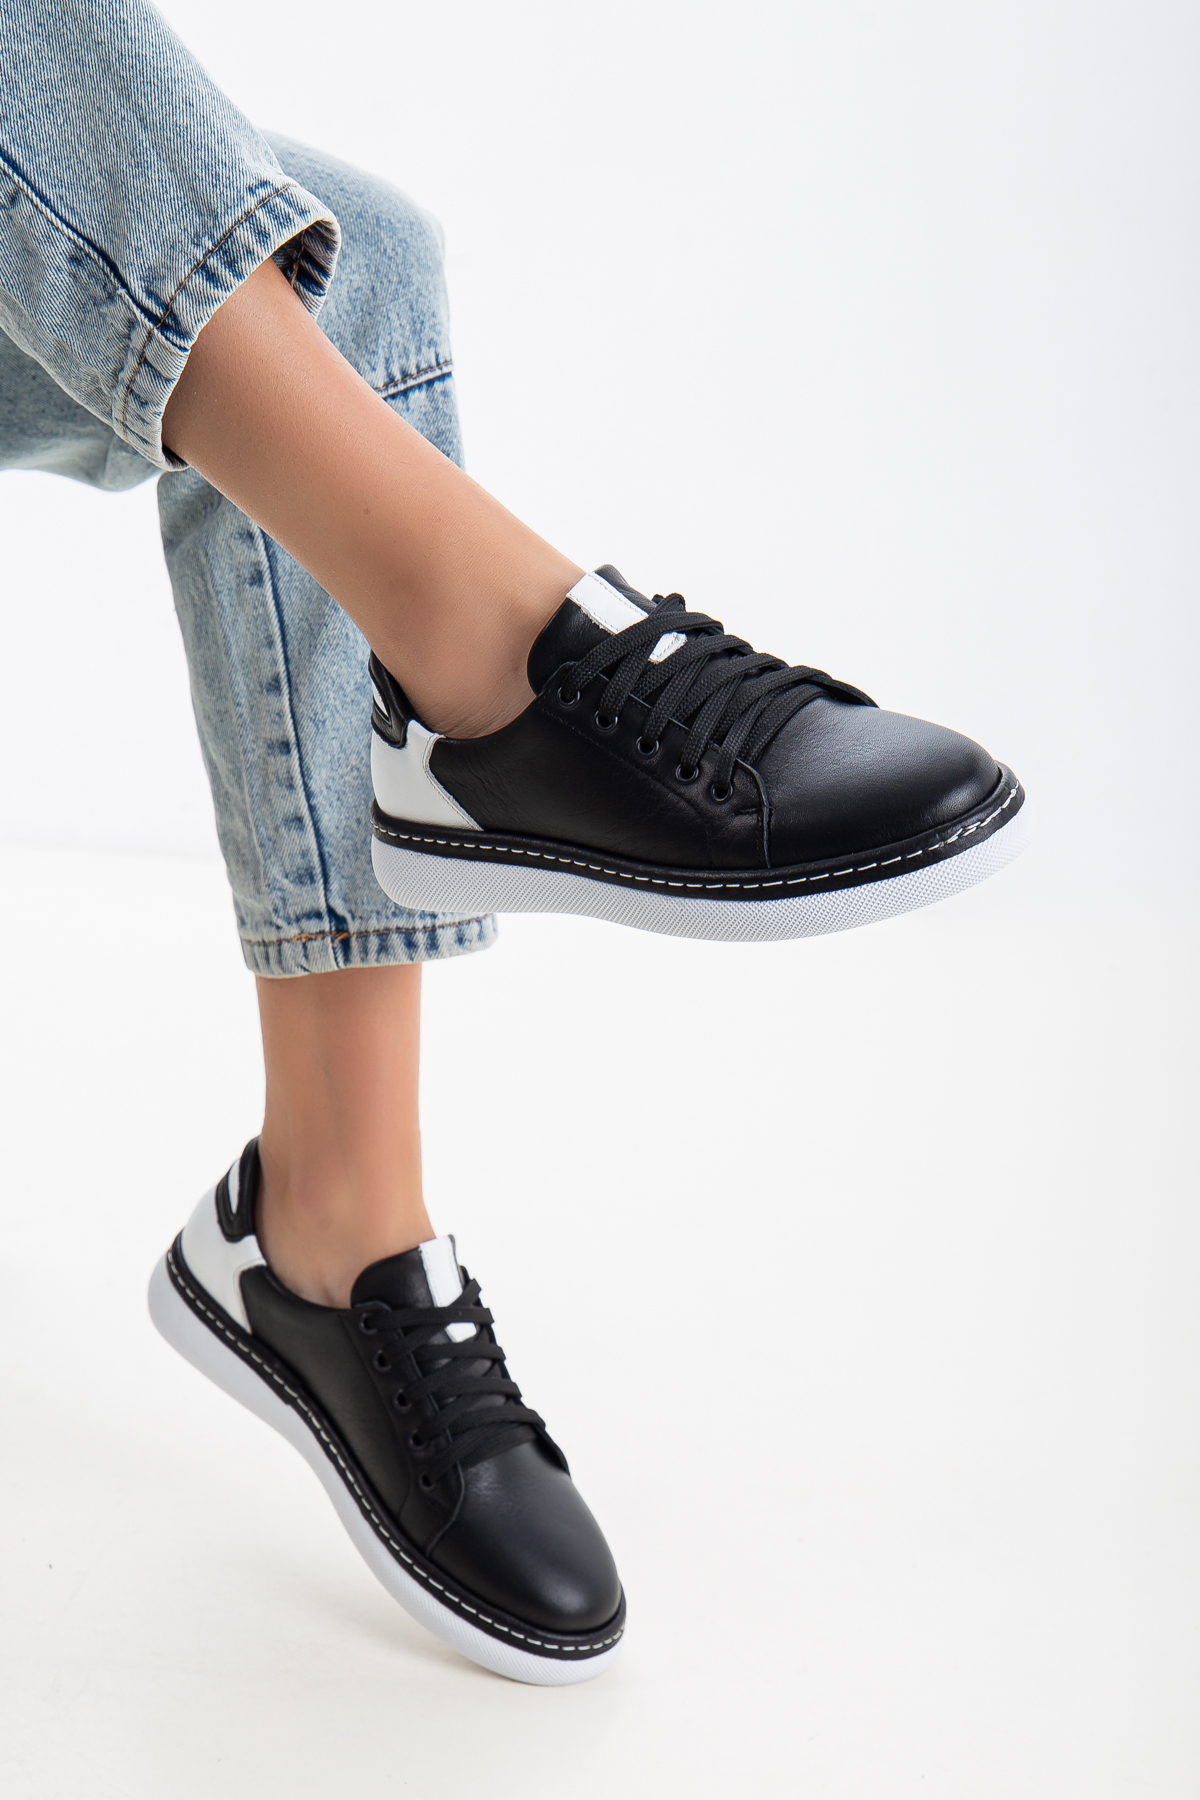 Kadın Sneakers siyah Hakiki Deri Spor Ayakkabı